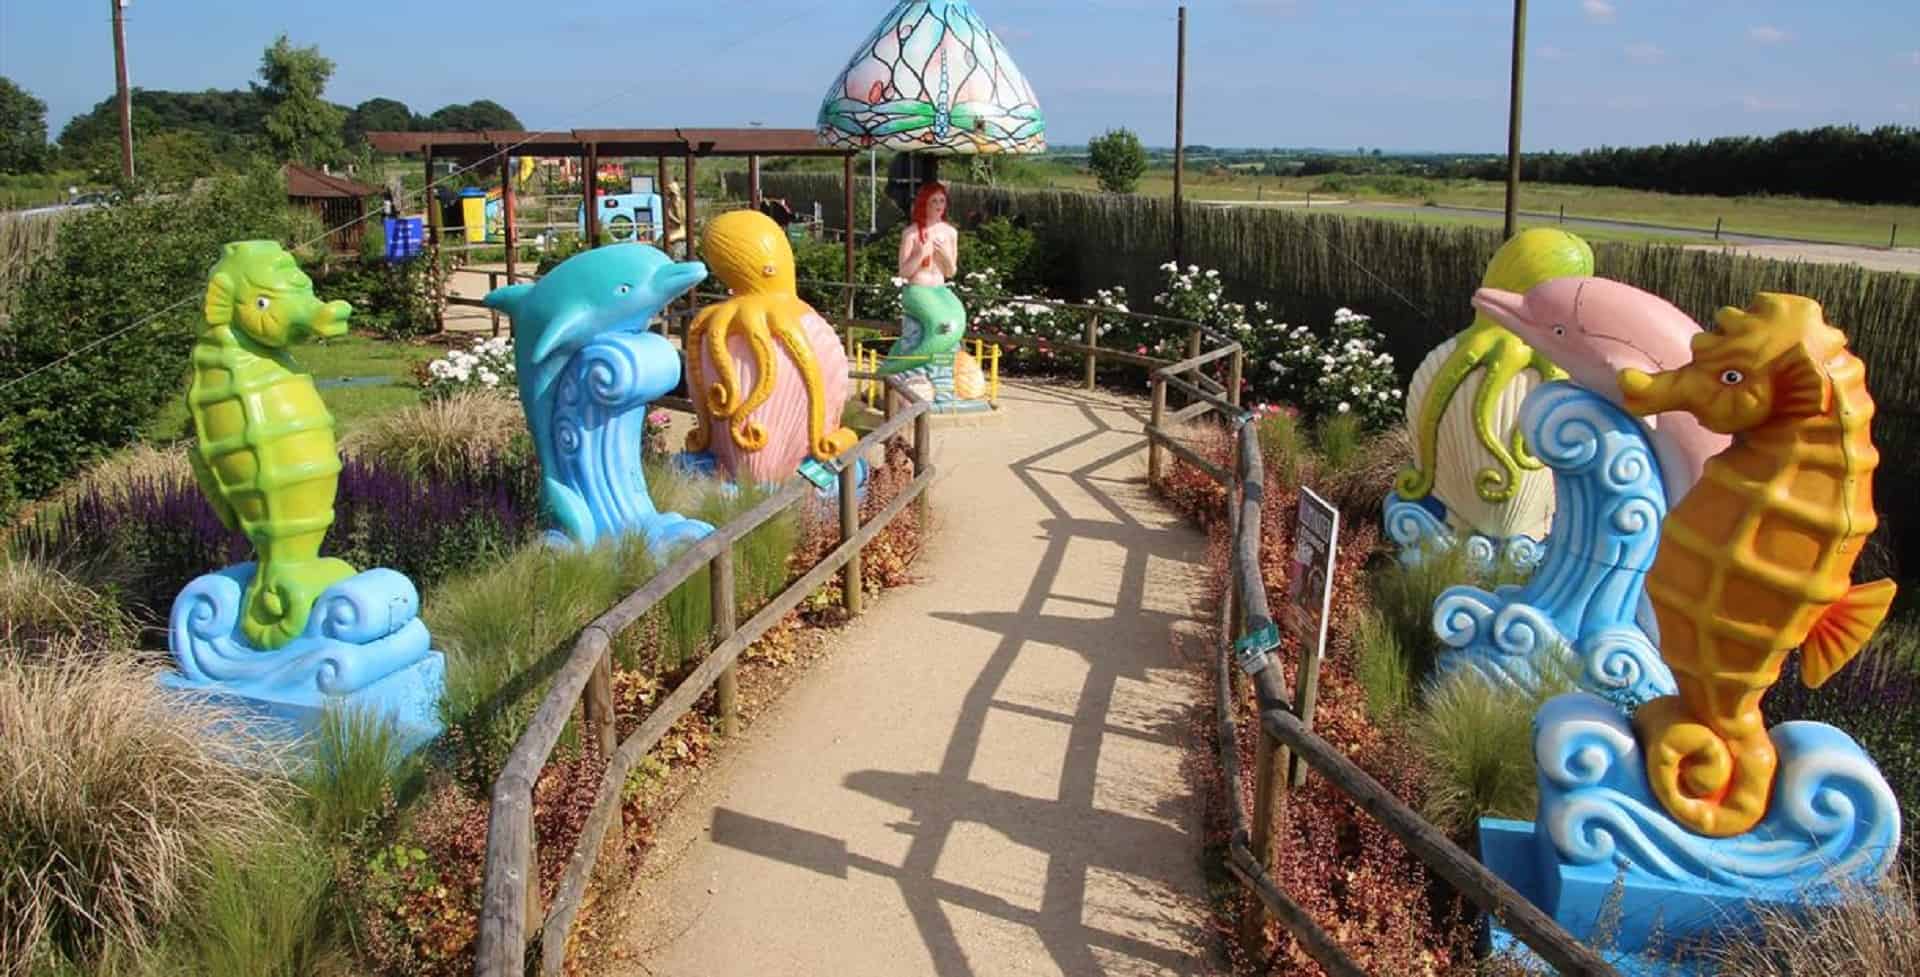 Fairytale Farm in UK